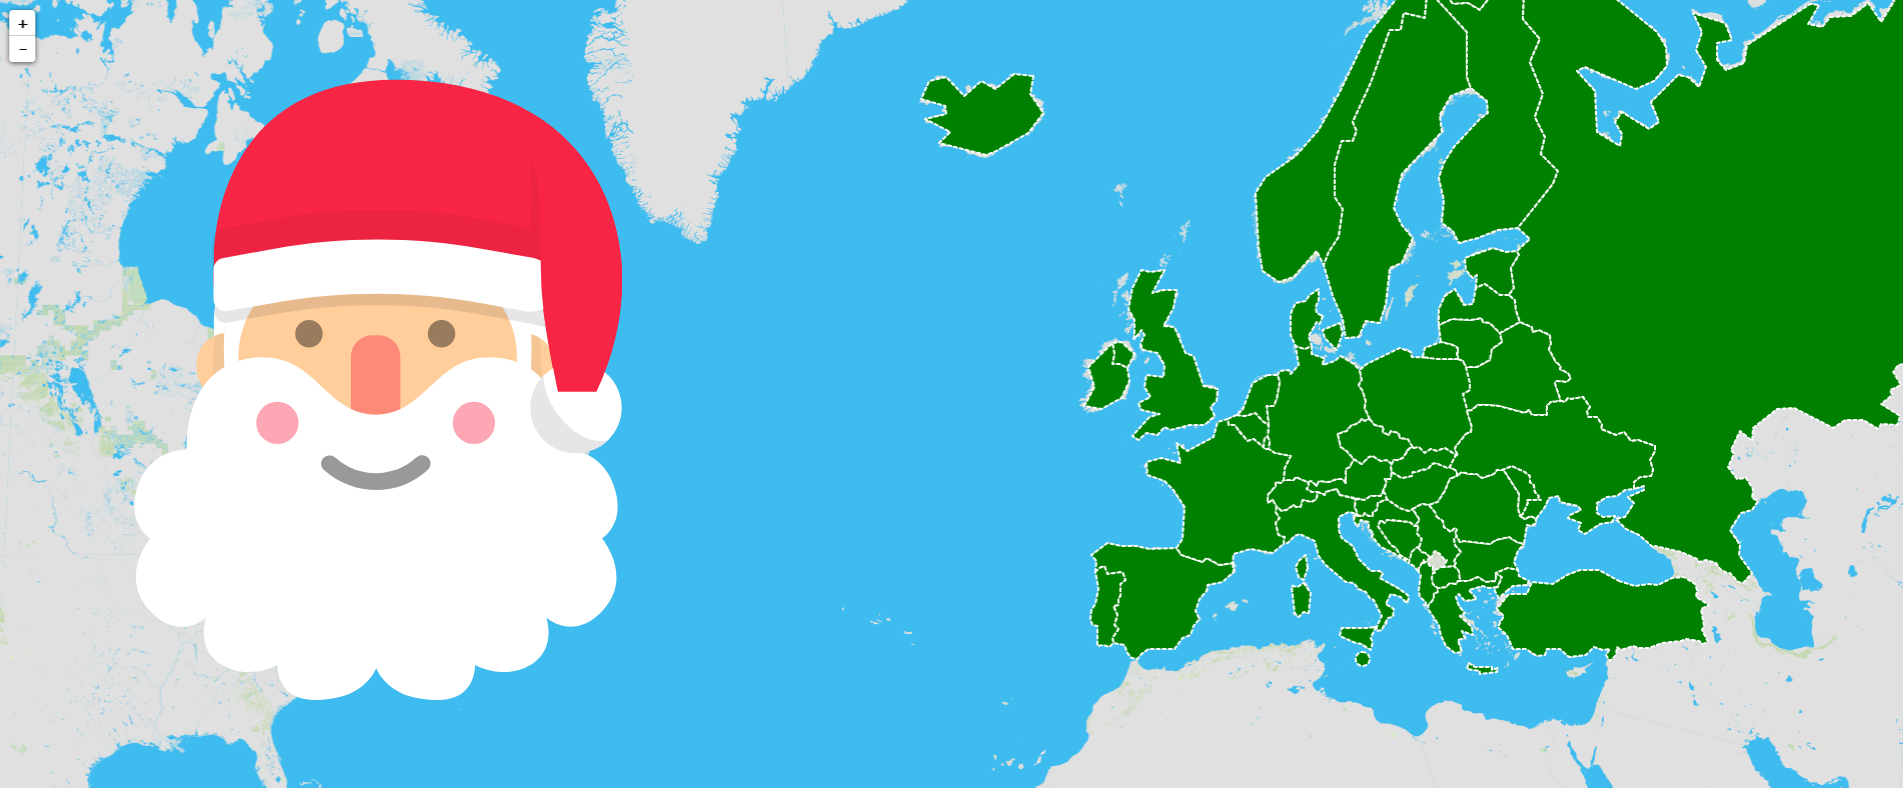 "Bo Nadal" en diferentes idiomas europeos